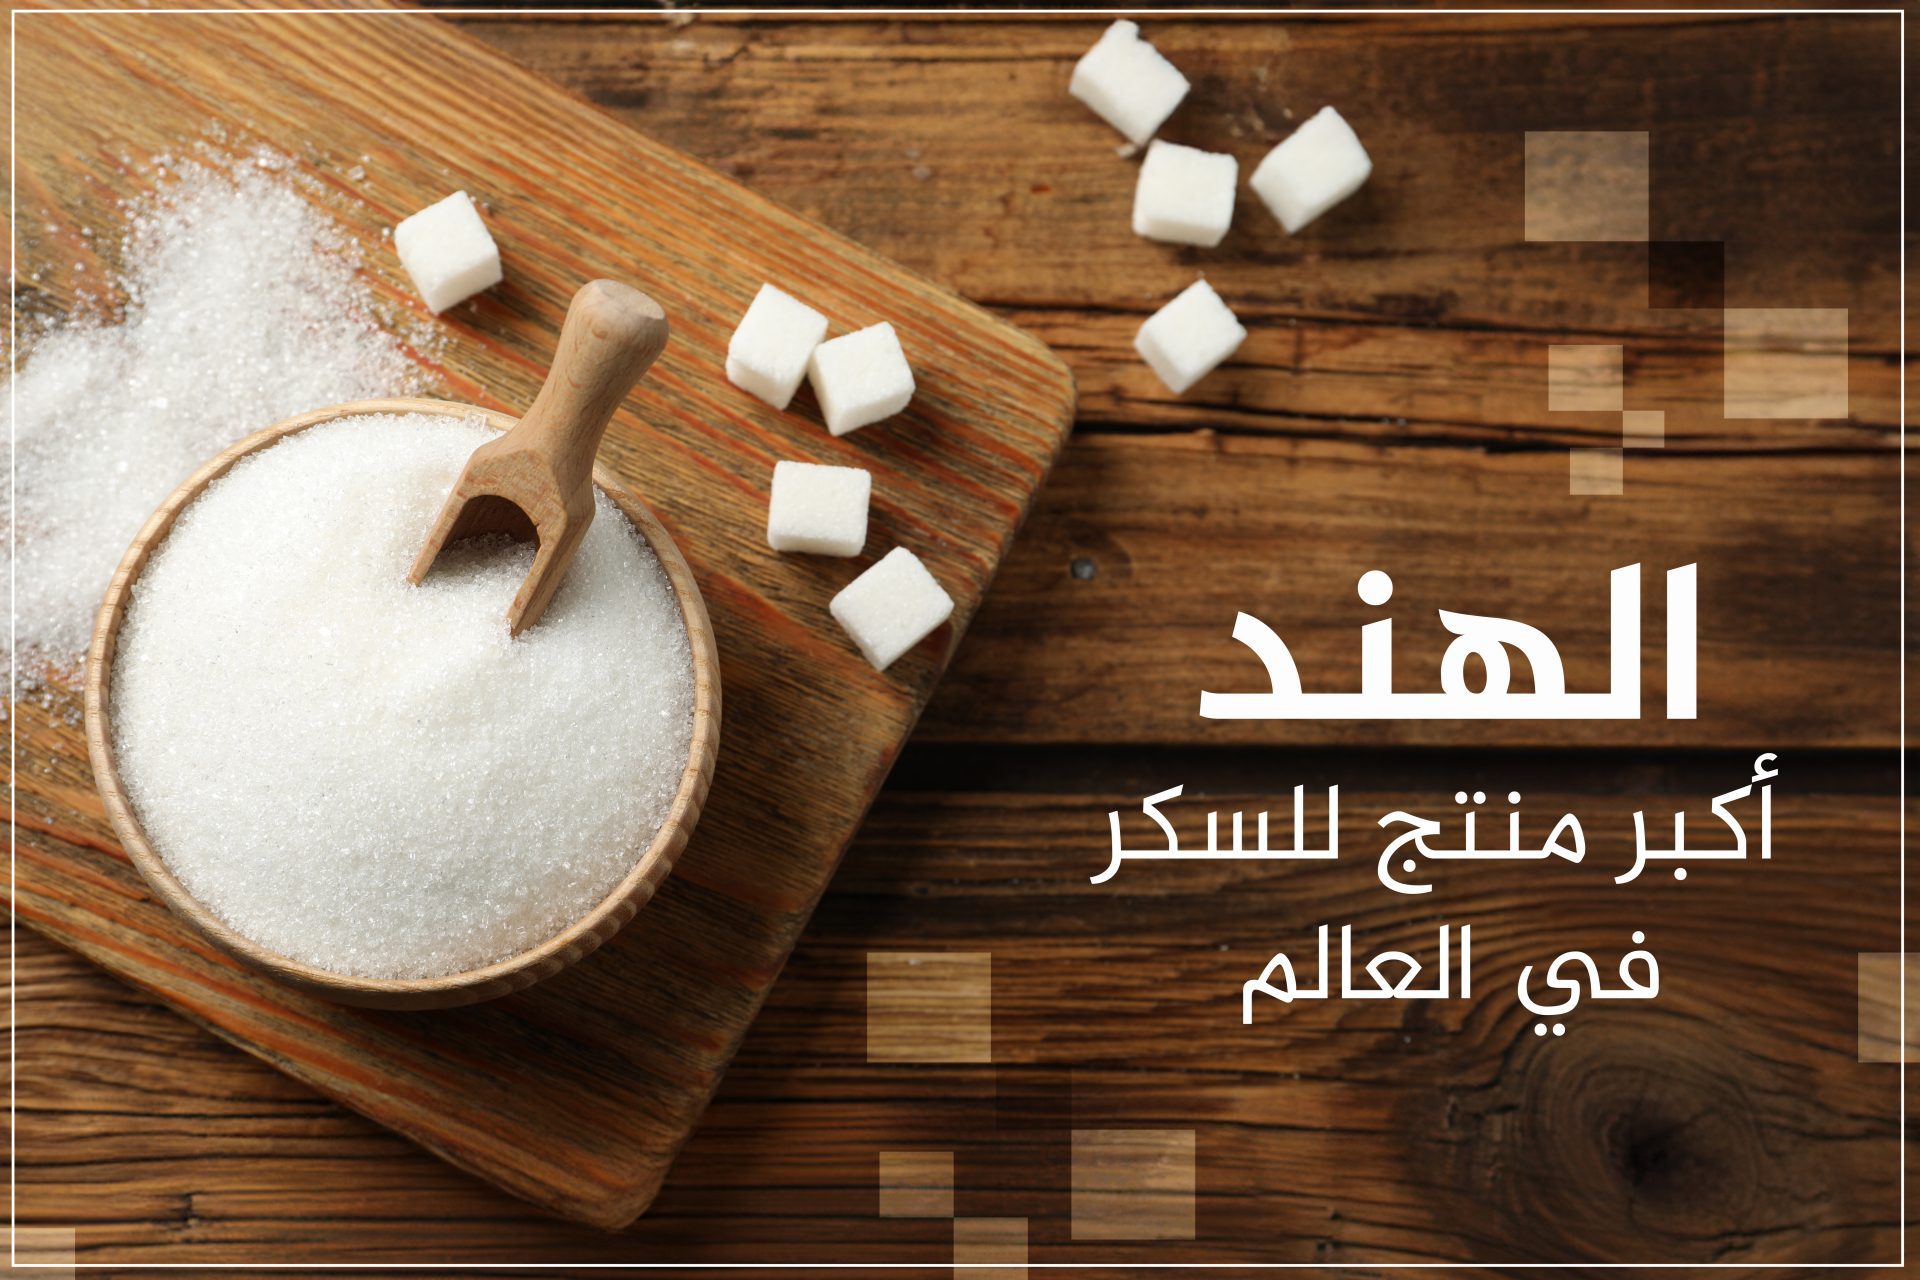 Top 10 sociétés dominant le marché mondial du sucre, une arabe